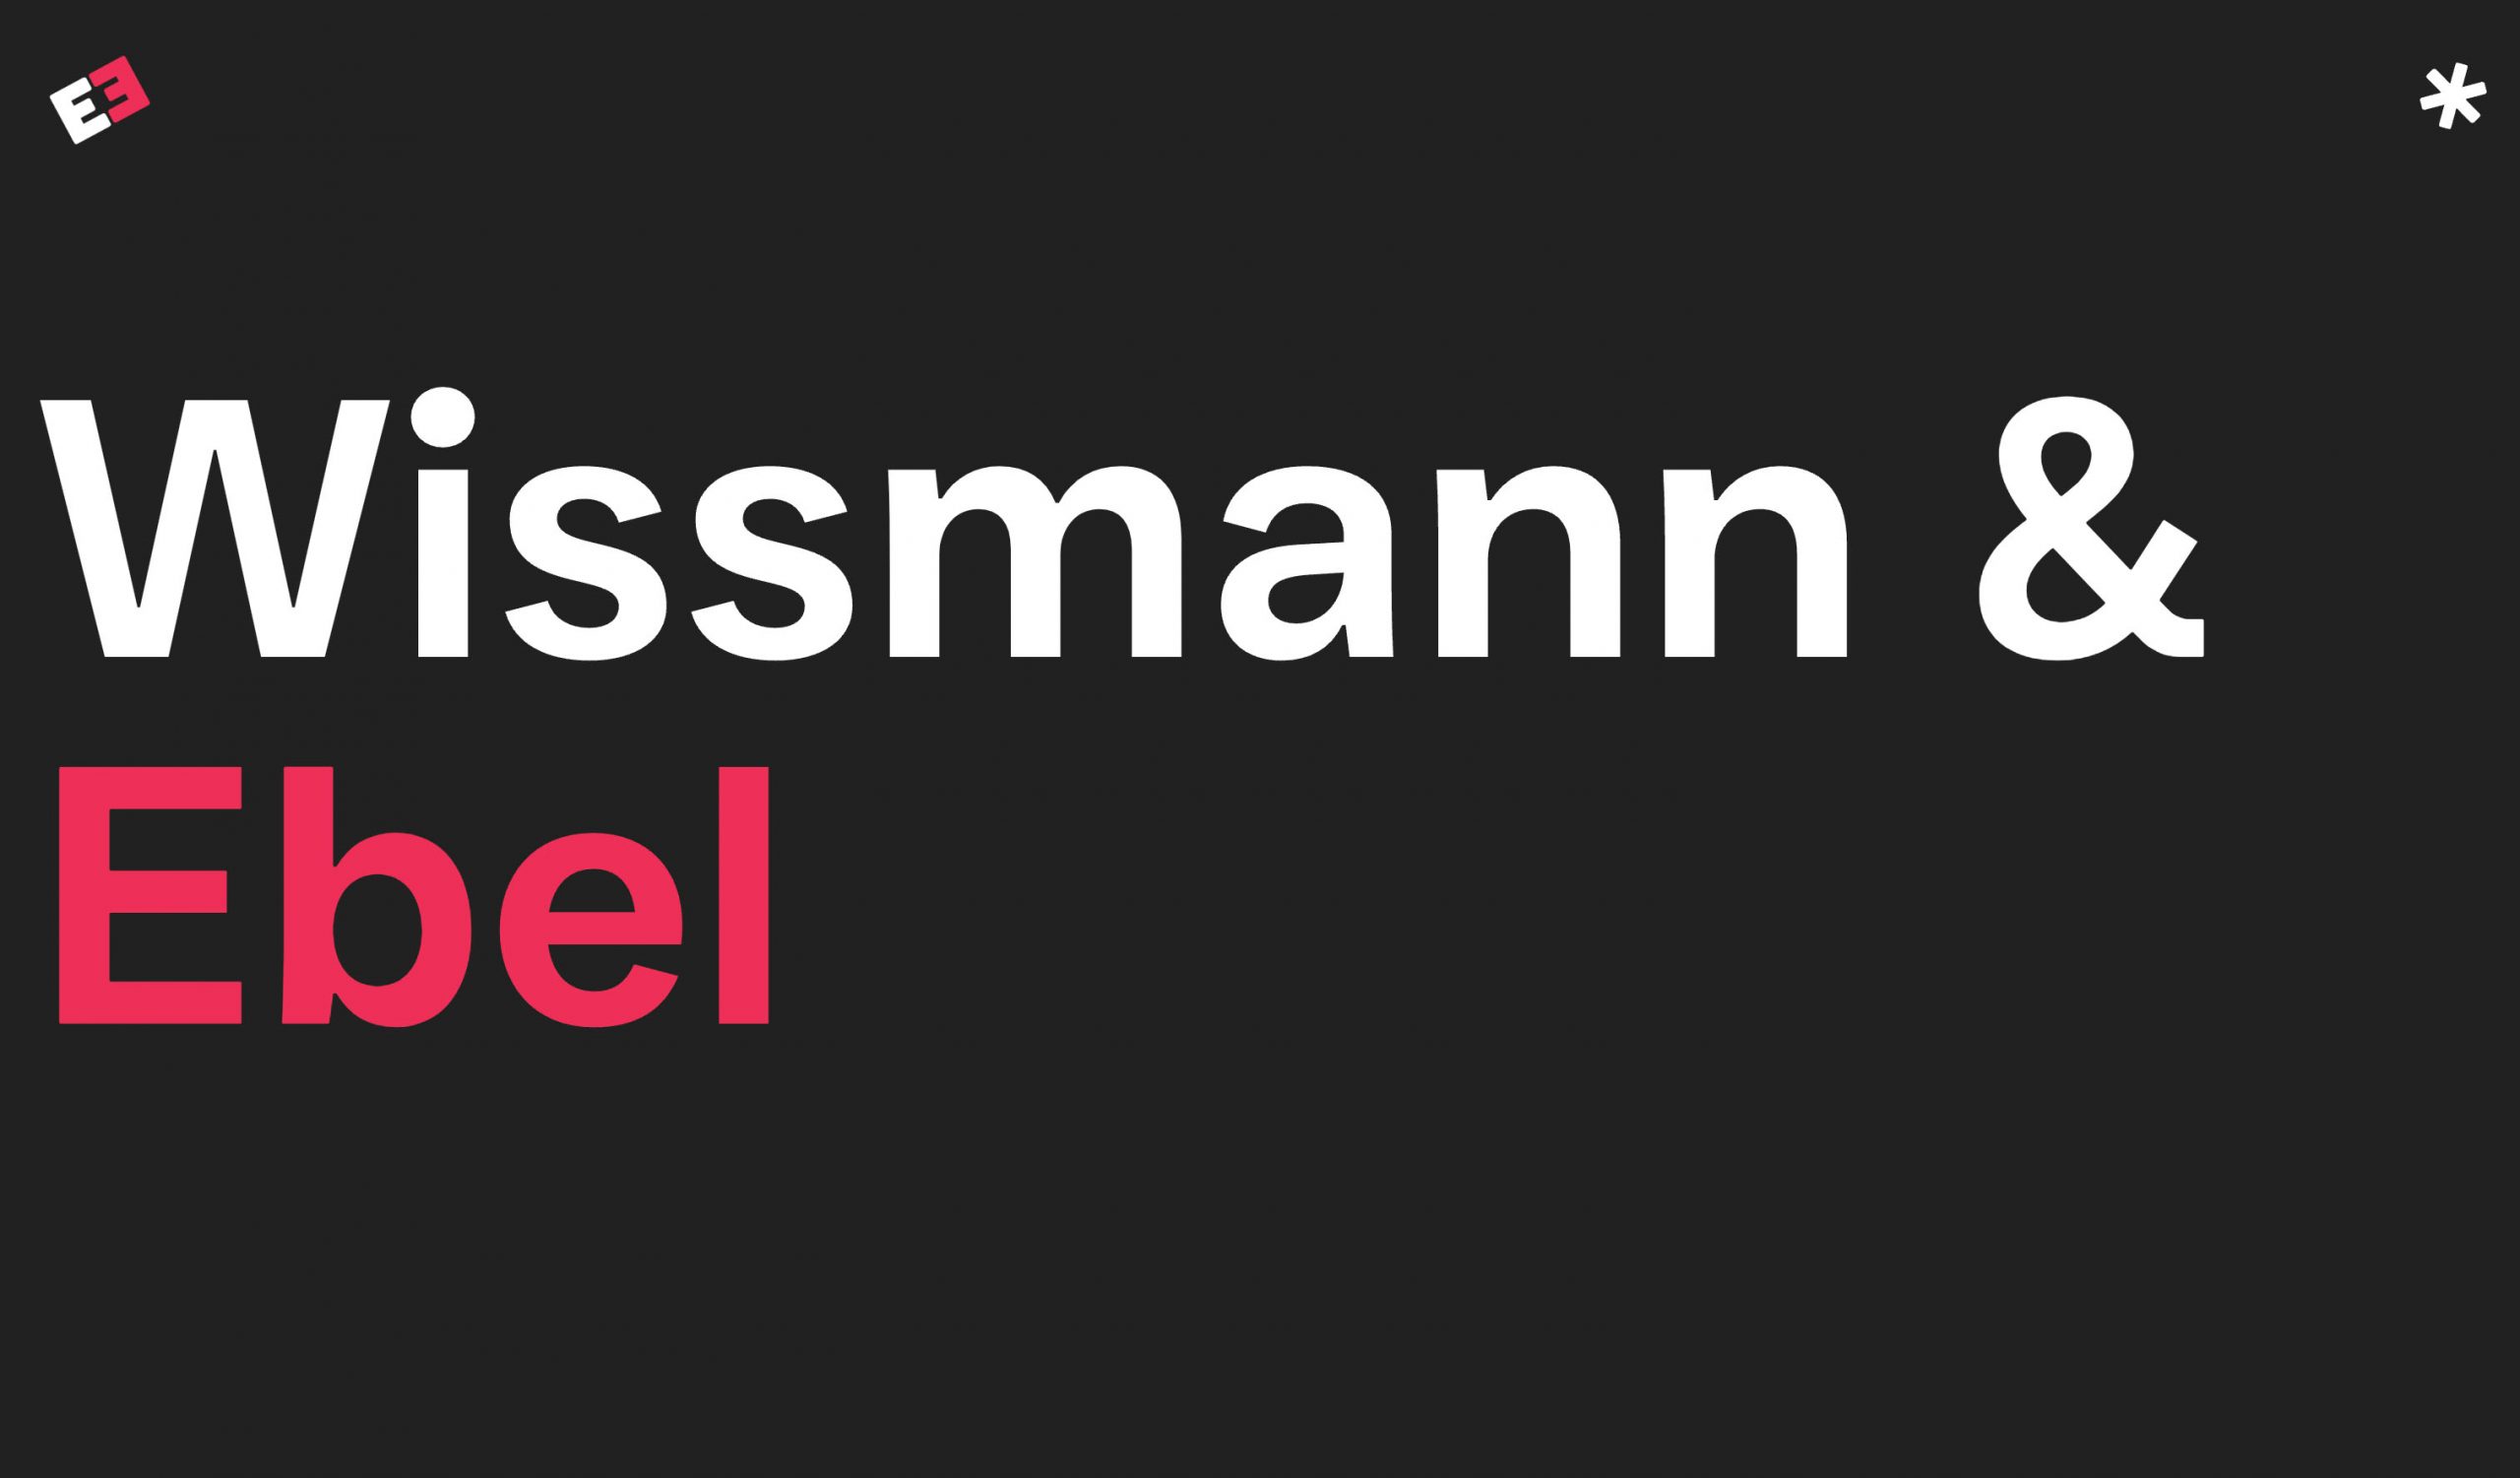 Wissmann & Ebel. Die Design Agentur aus dem Rheinland